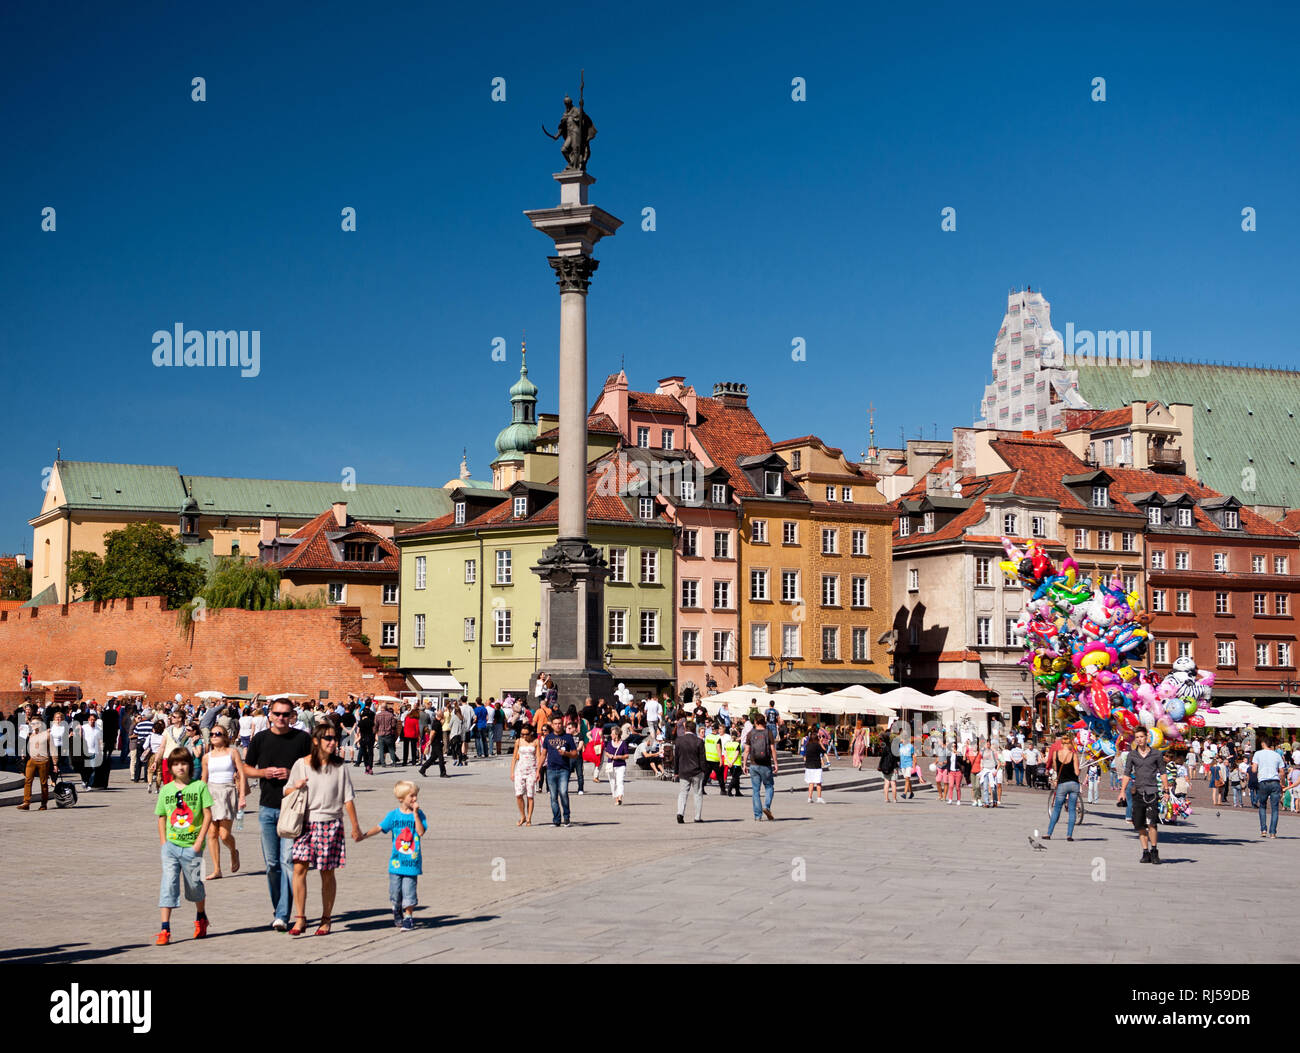 Zygmunt monumento e turisti a piedi a Royal Castle Square nella Città Vecchia di Varsavia, Polonia, Estate stagione del turismo, Foto Stock